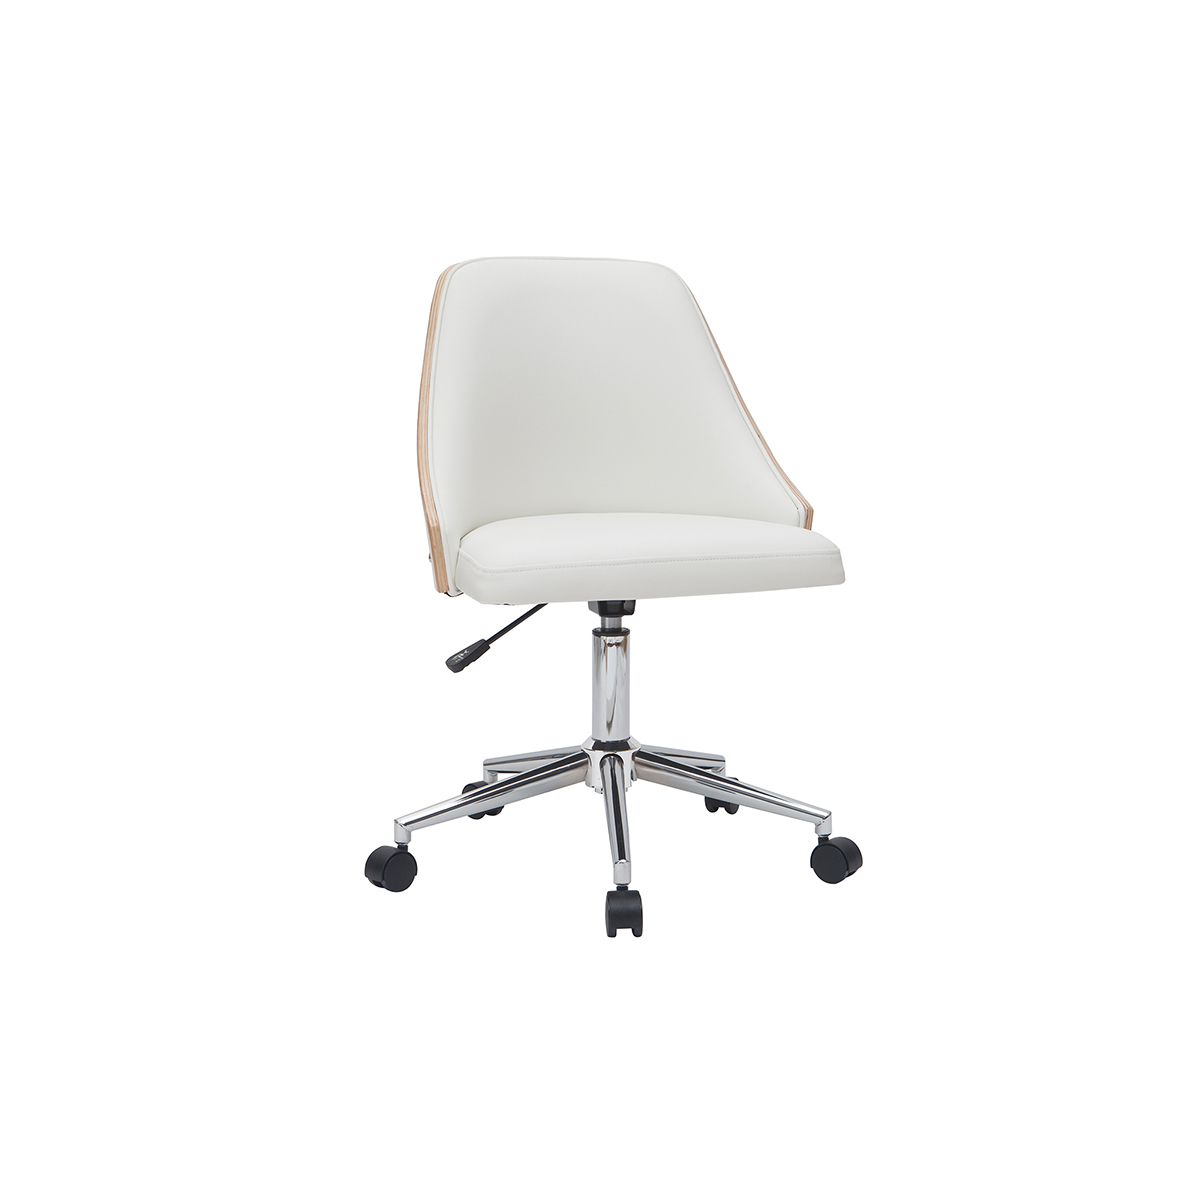 Chaise de bureau à roulettes design blanc, bois clair et acier chromé QUINO vue1